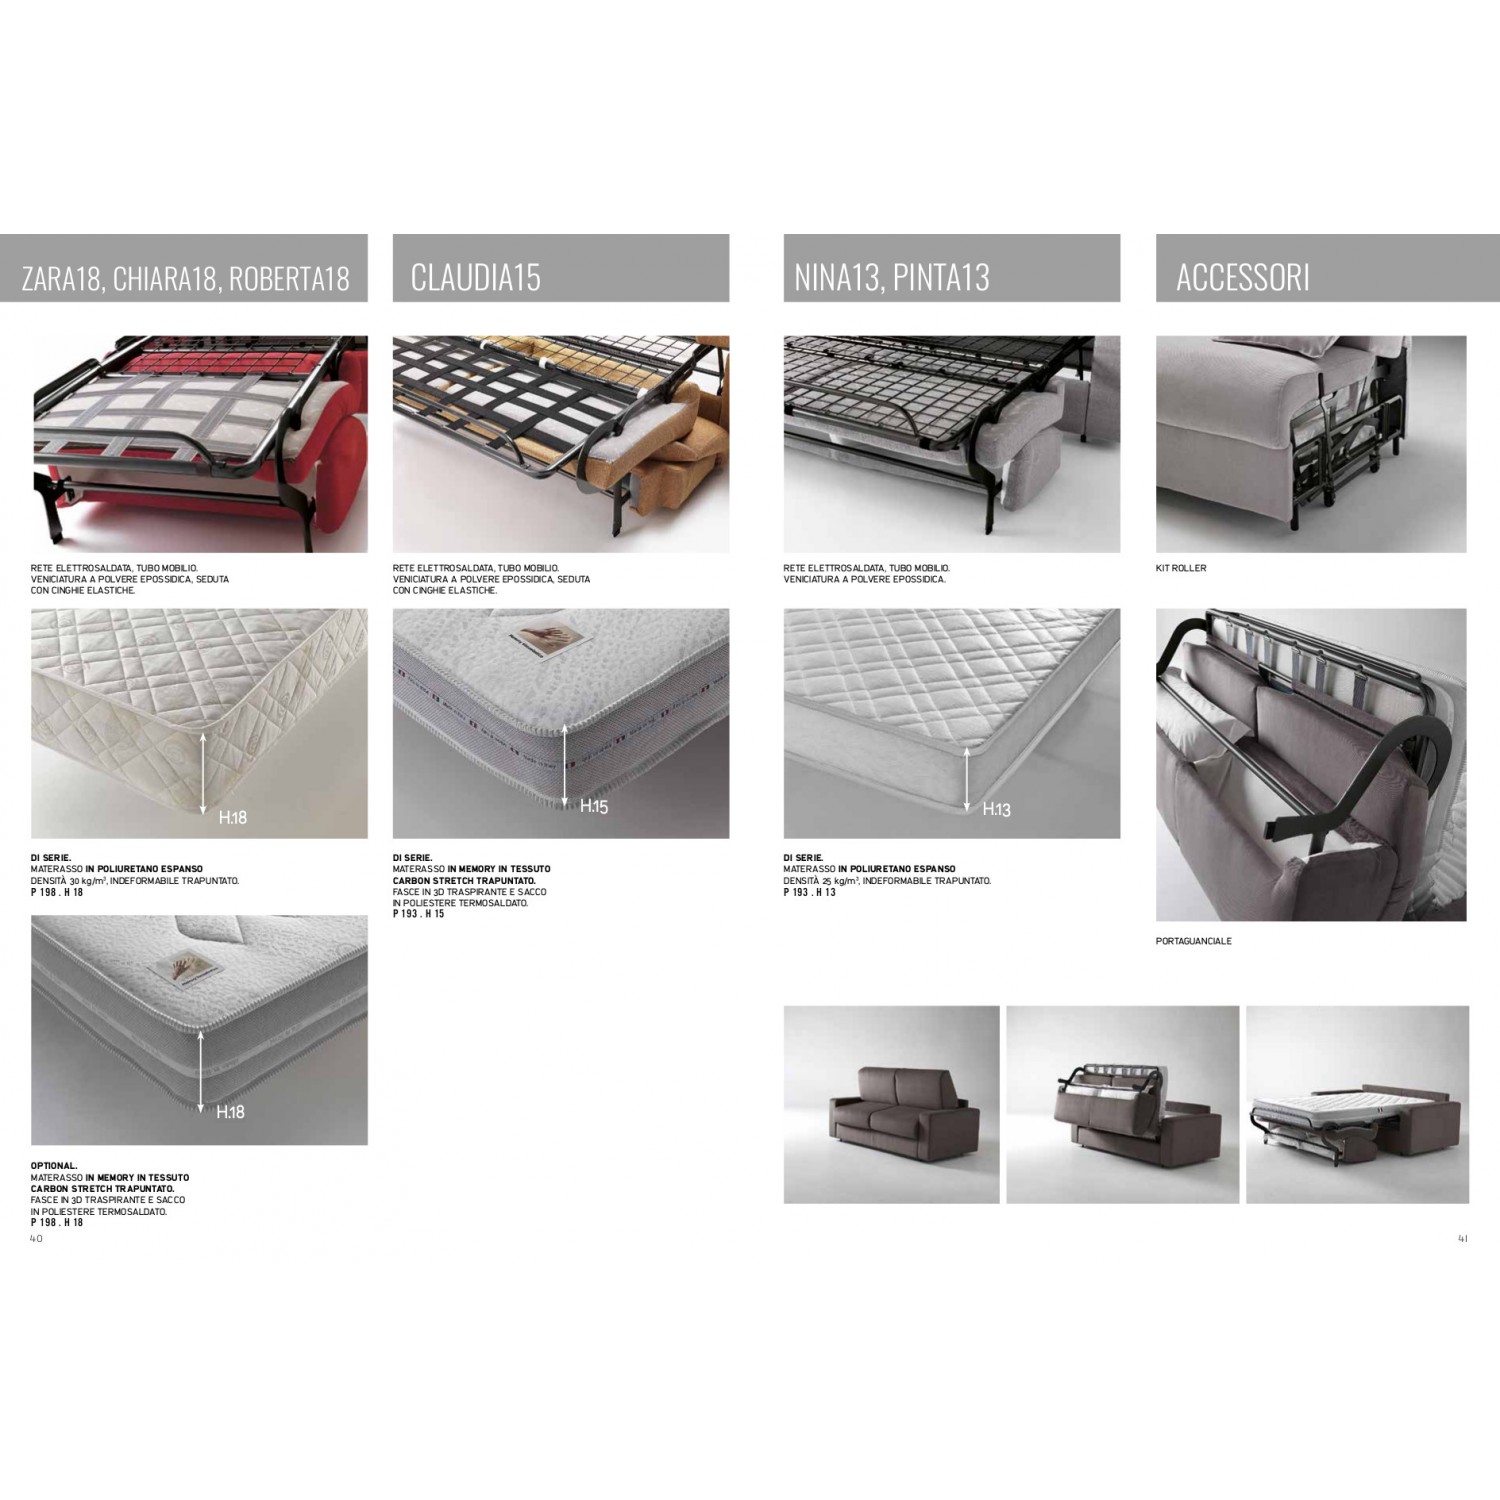 Divano-letto con materasso h18cm indeformabile con portaguanciale, poggiatesta regolabili cm 198x95H 86/103